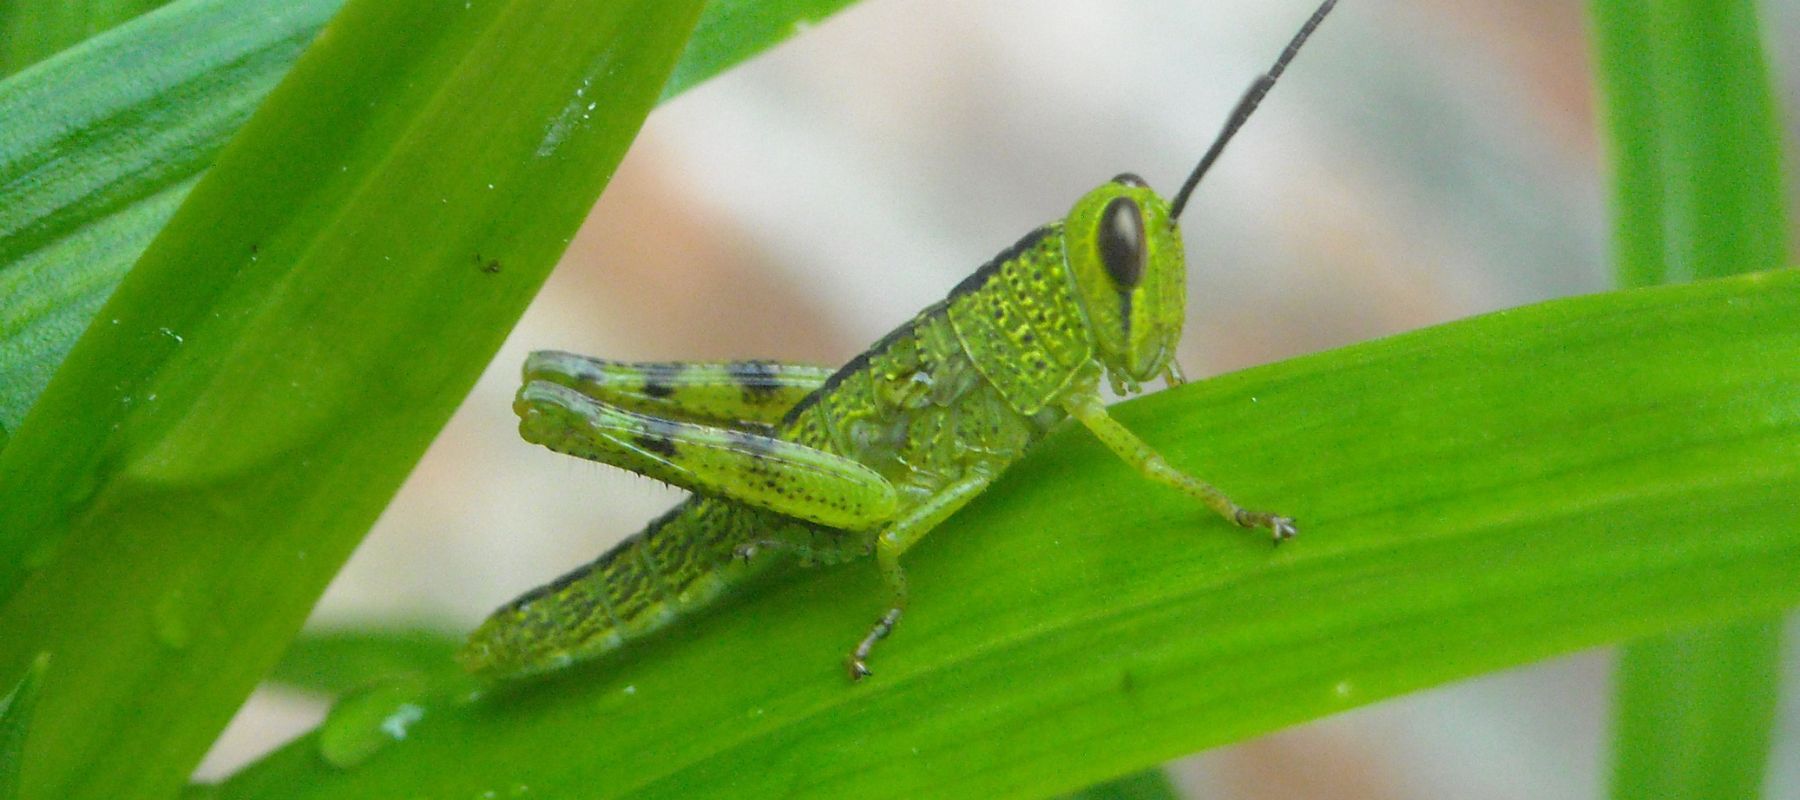 Grasshoppers in the garden